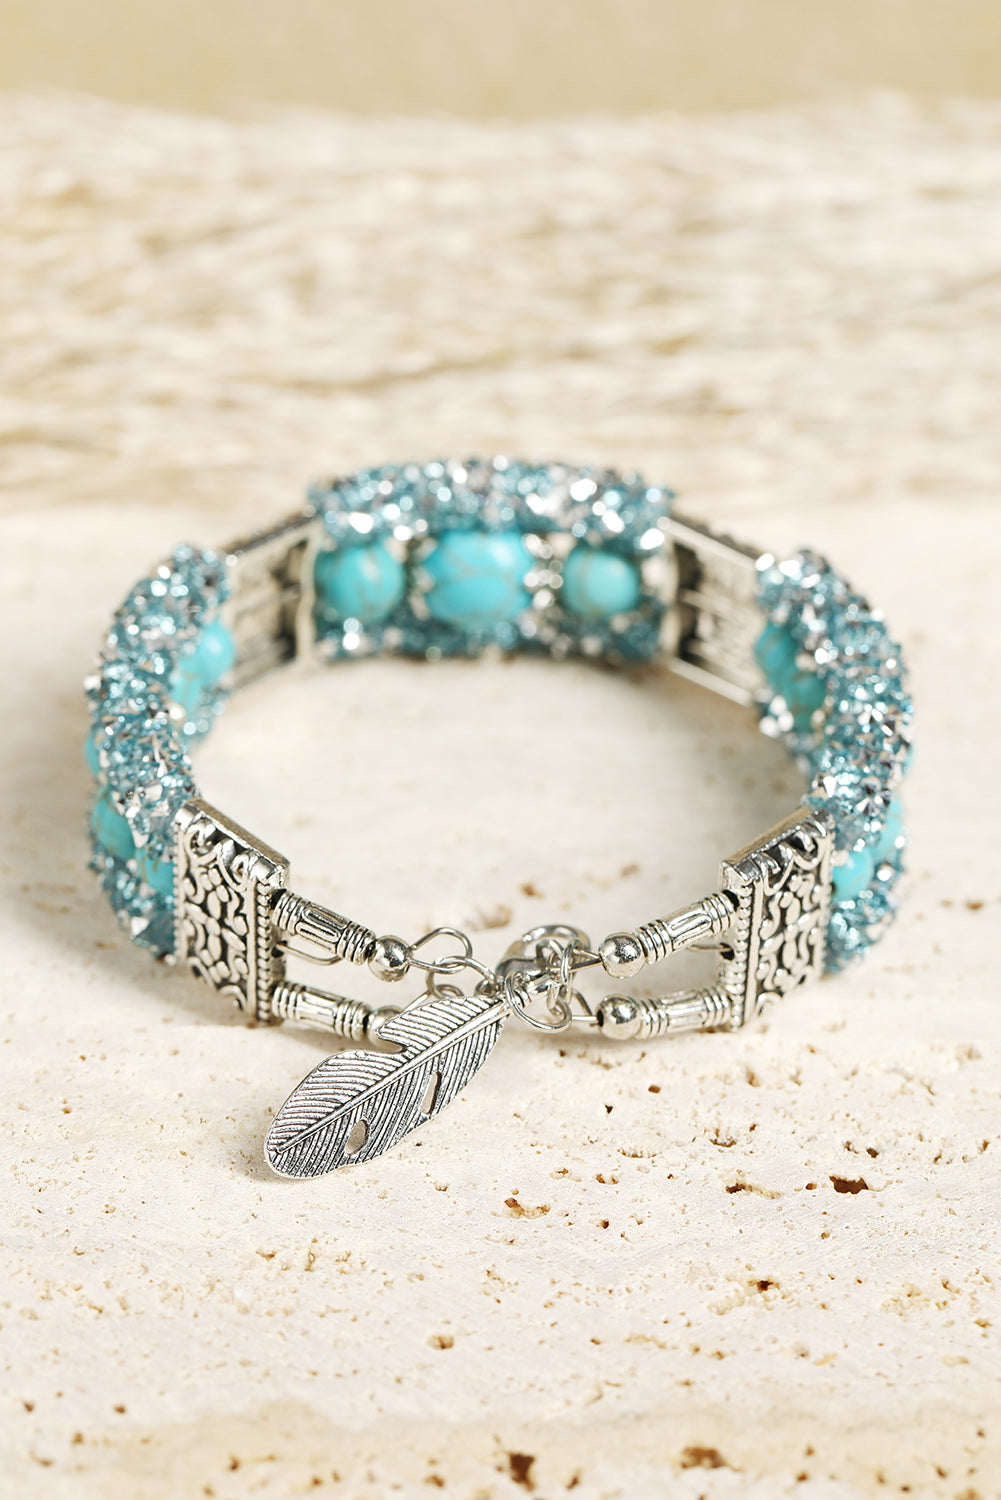 Western Turquoise Beads Rhinestone Carved Bracelet